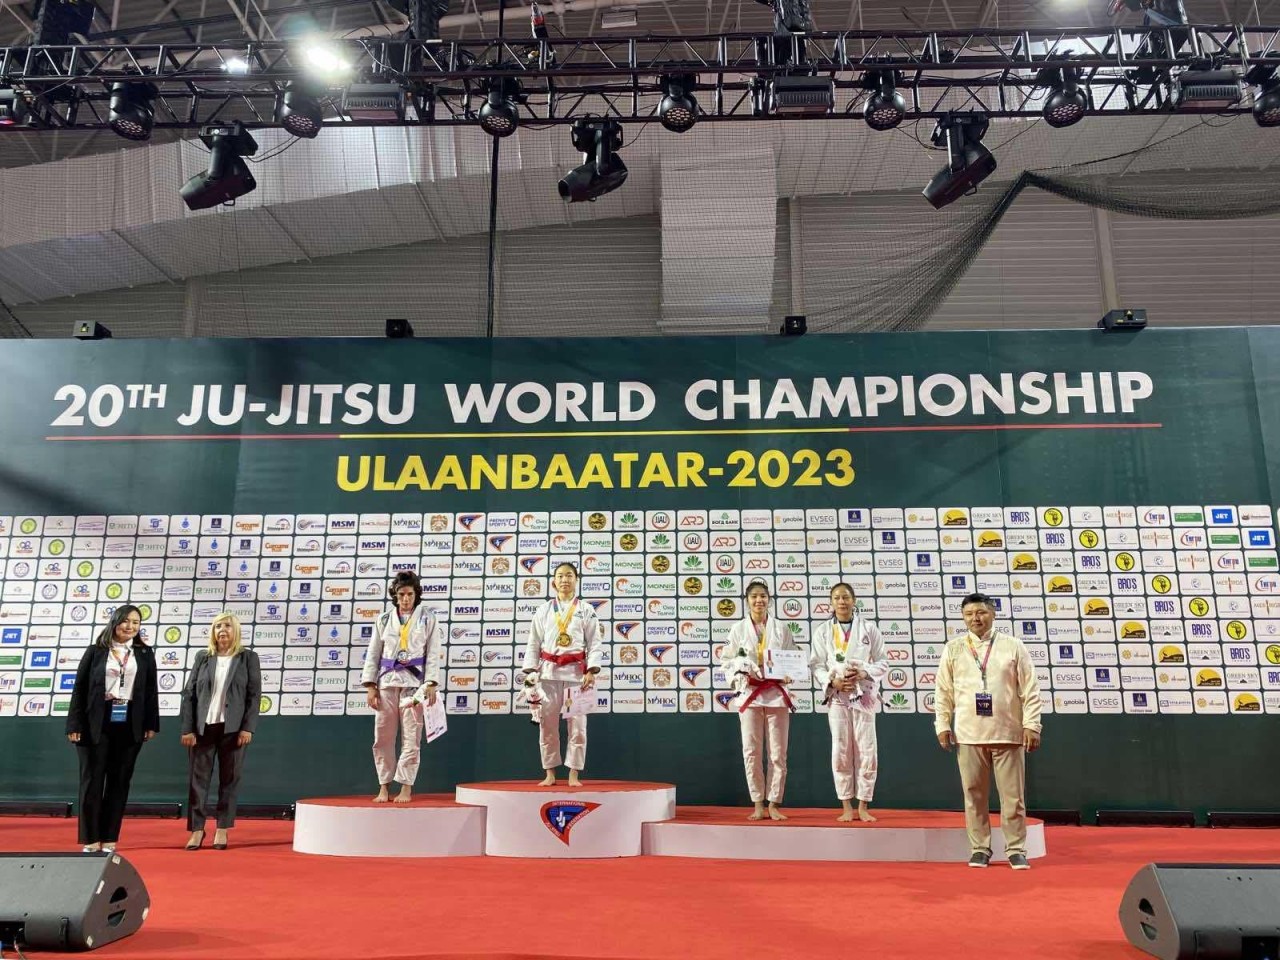 Đội tuyển Jujitsu Việt Nam tham gia Giải vô địch Jujitsu Thế giới Ulaanbaatar 2023